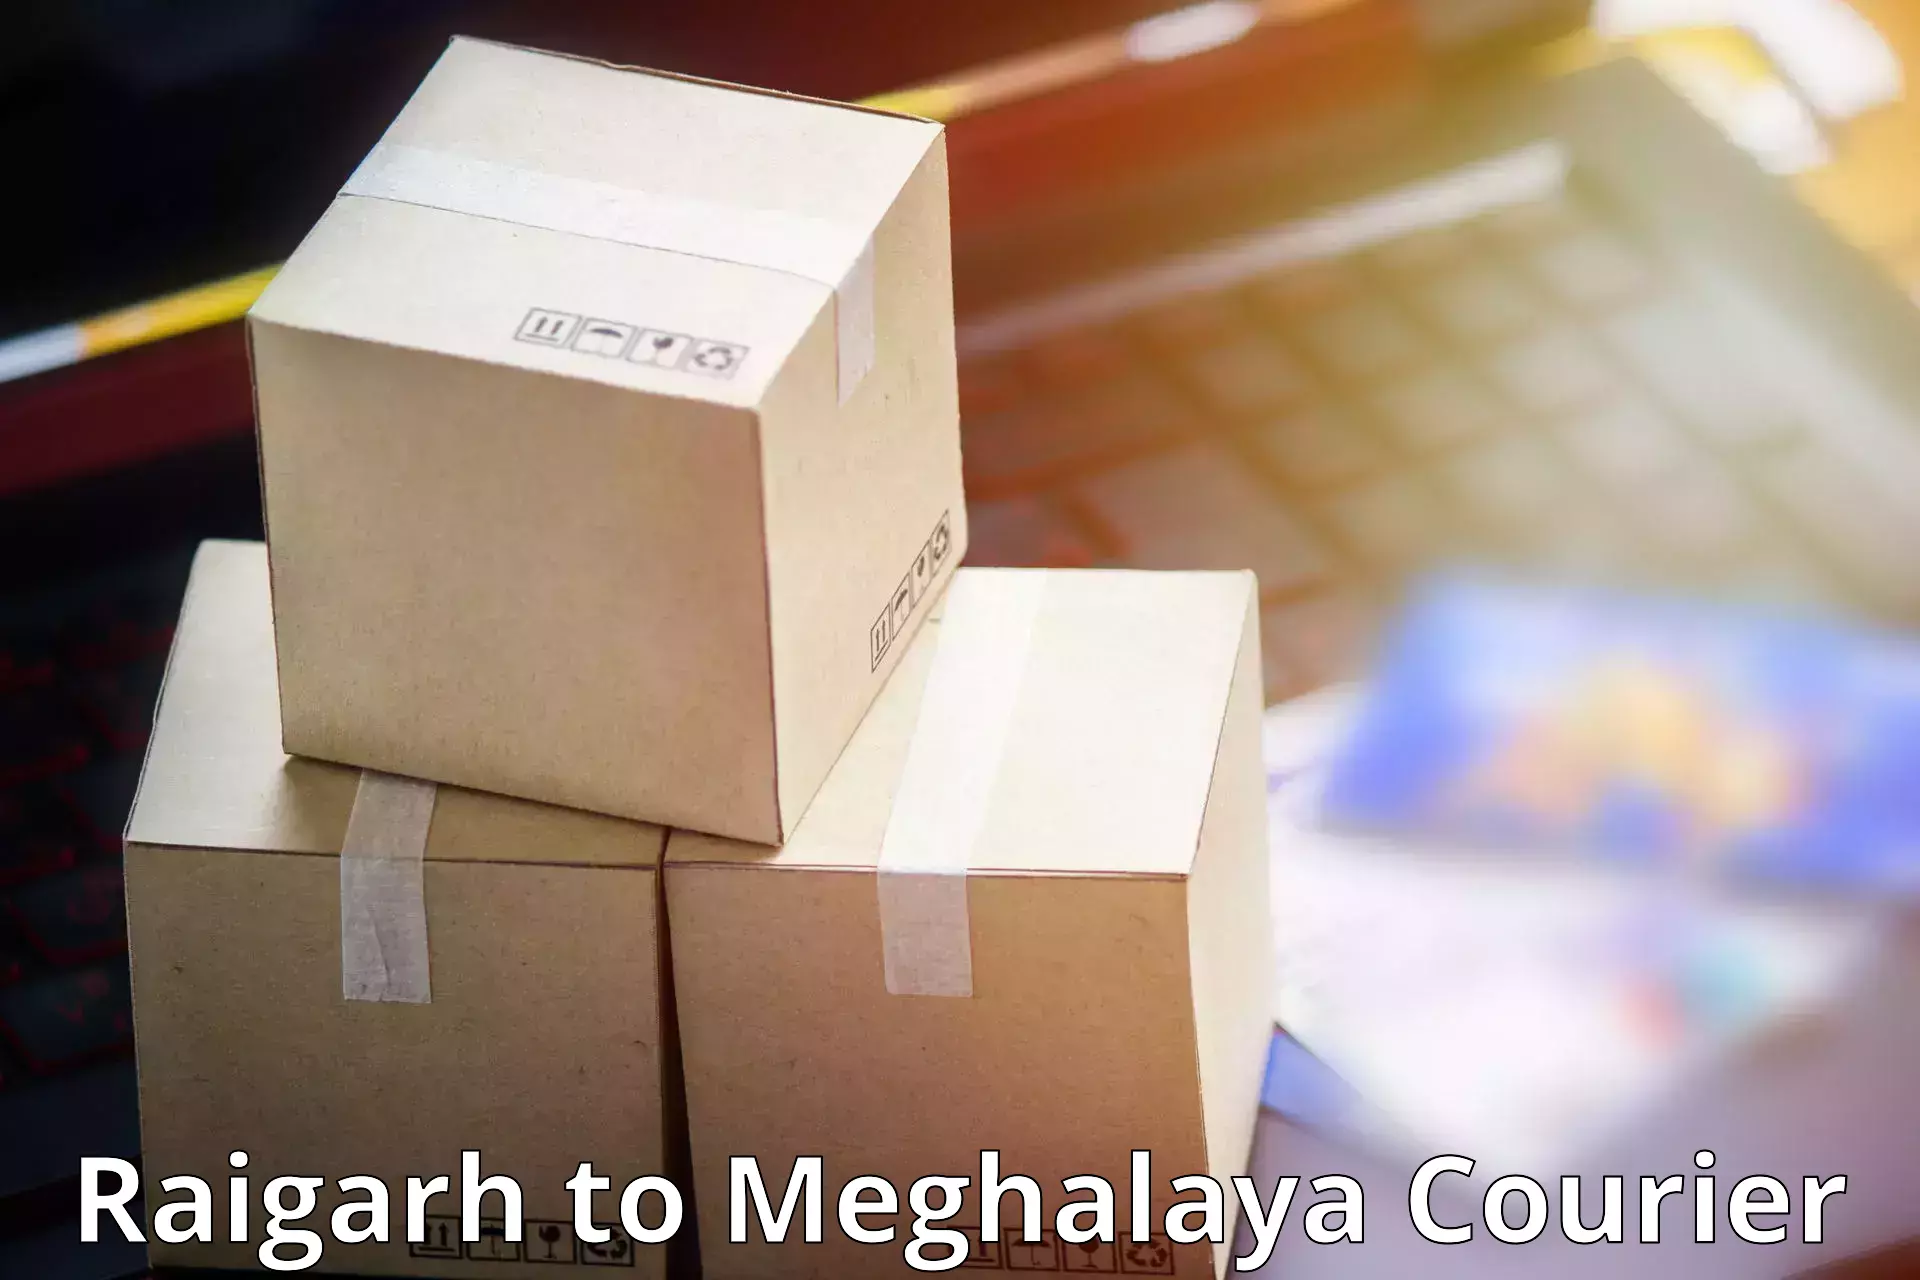 Specialized shipment handling Raigarh to Phulbari